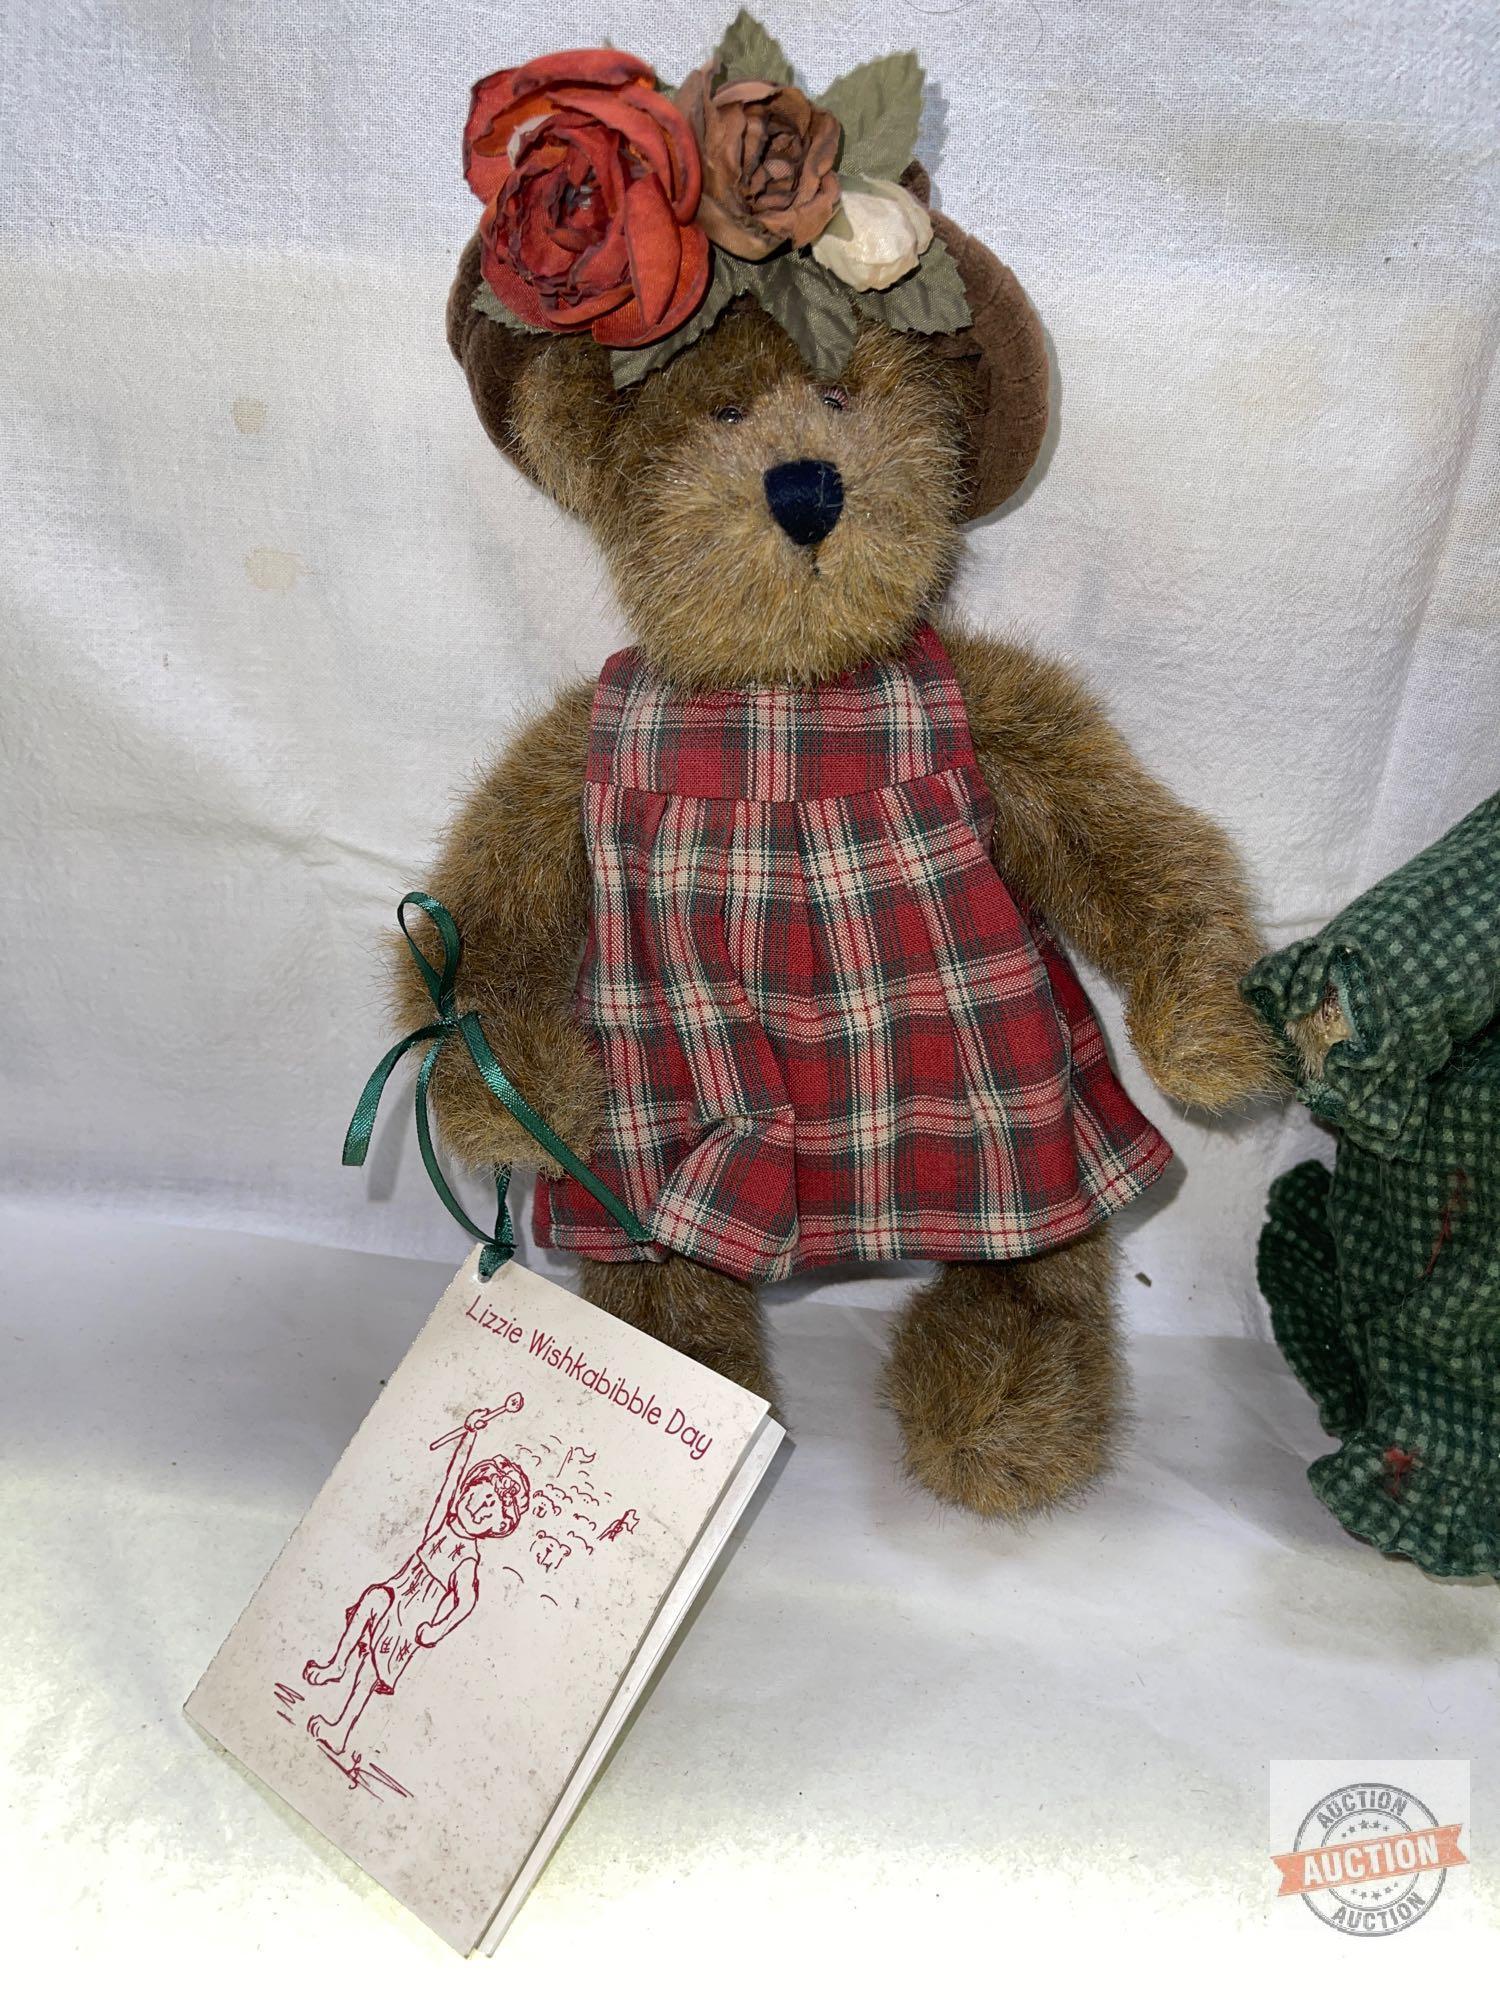 Bears - 2 stuffed bears in basket, glass eyes, Boyds Bears "Lizzie Wishkabibble" w/storybook 10"h &